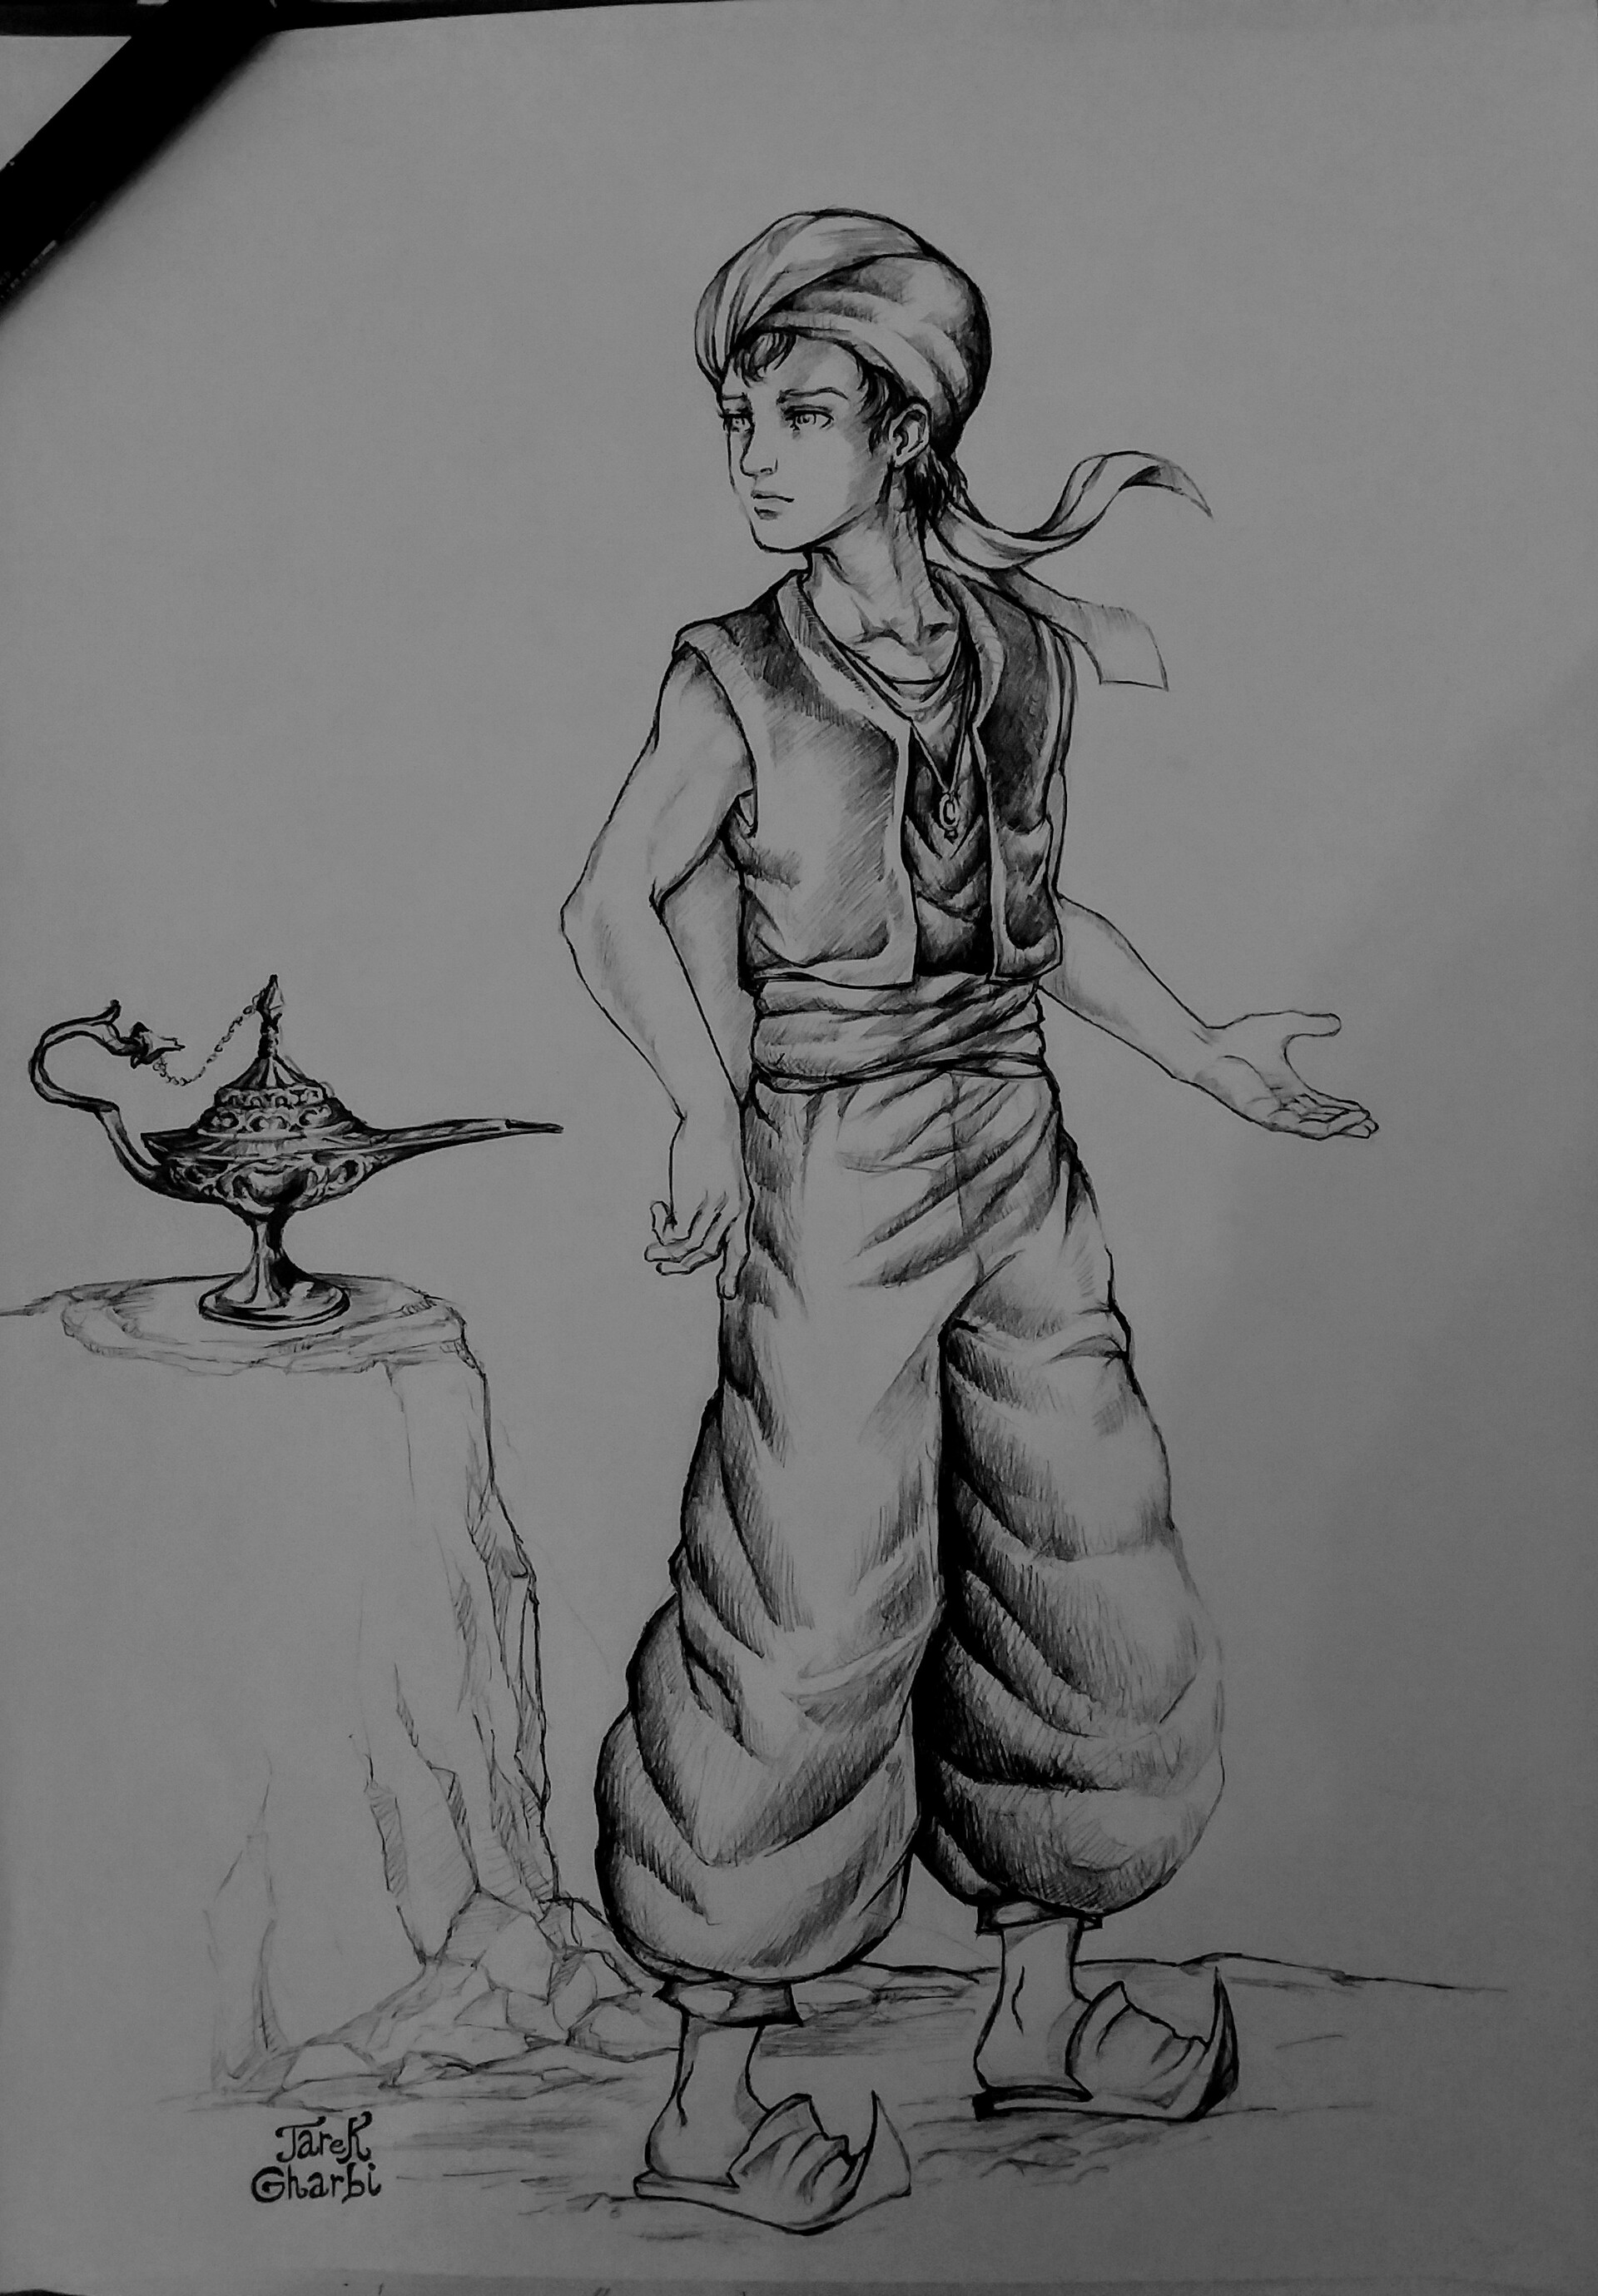 Aladdin sketch by Atnica on DeviantArt